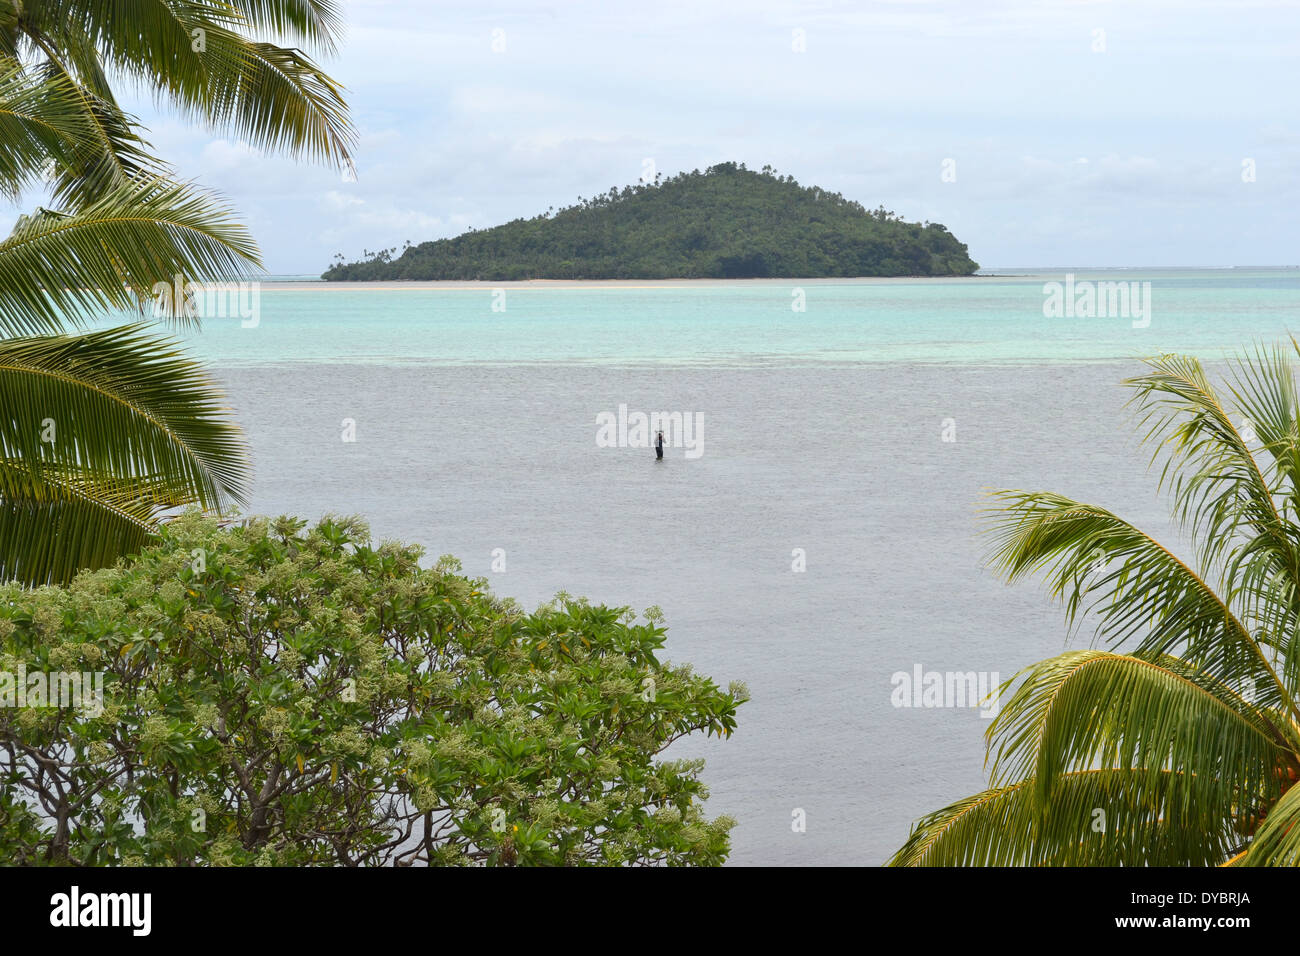 Luaniva Insel vor der Hauptstadt Stadt Matautu, Insel Wallis, Wallis und Futuna, Melanesien, Südsee Stockfoto